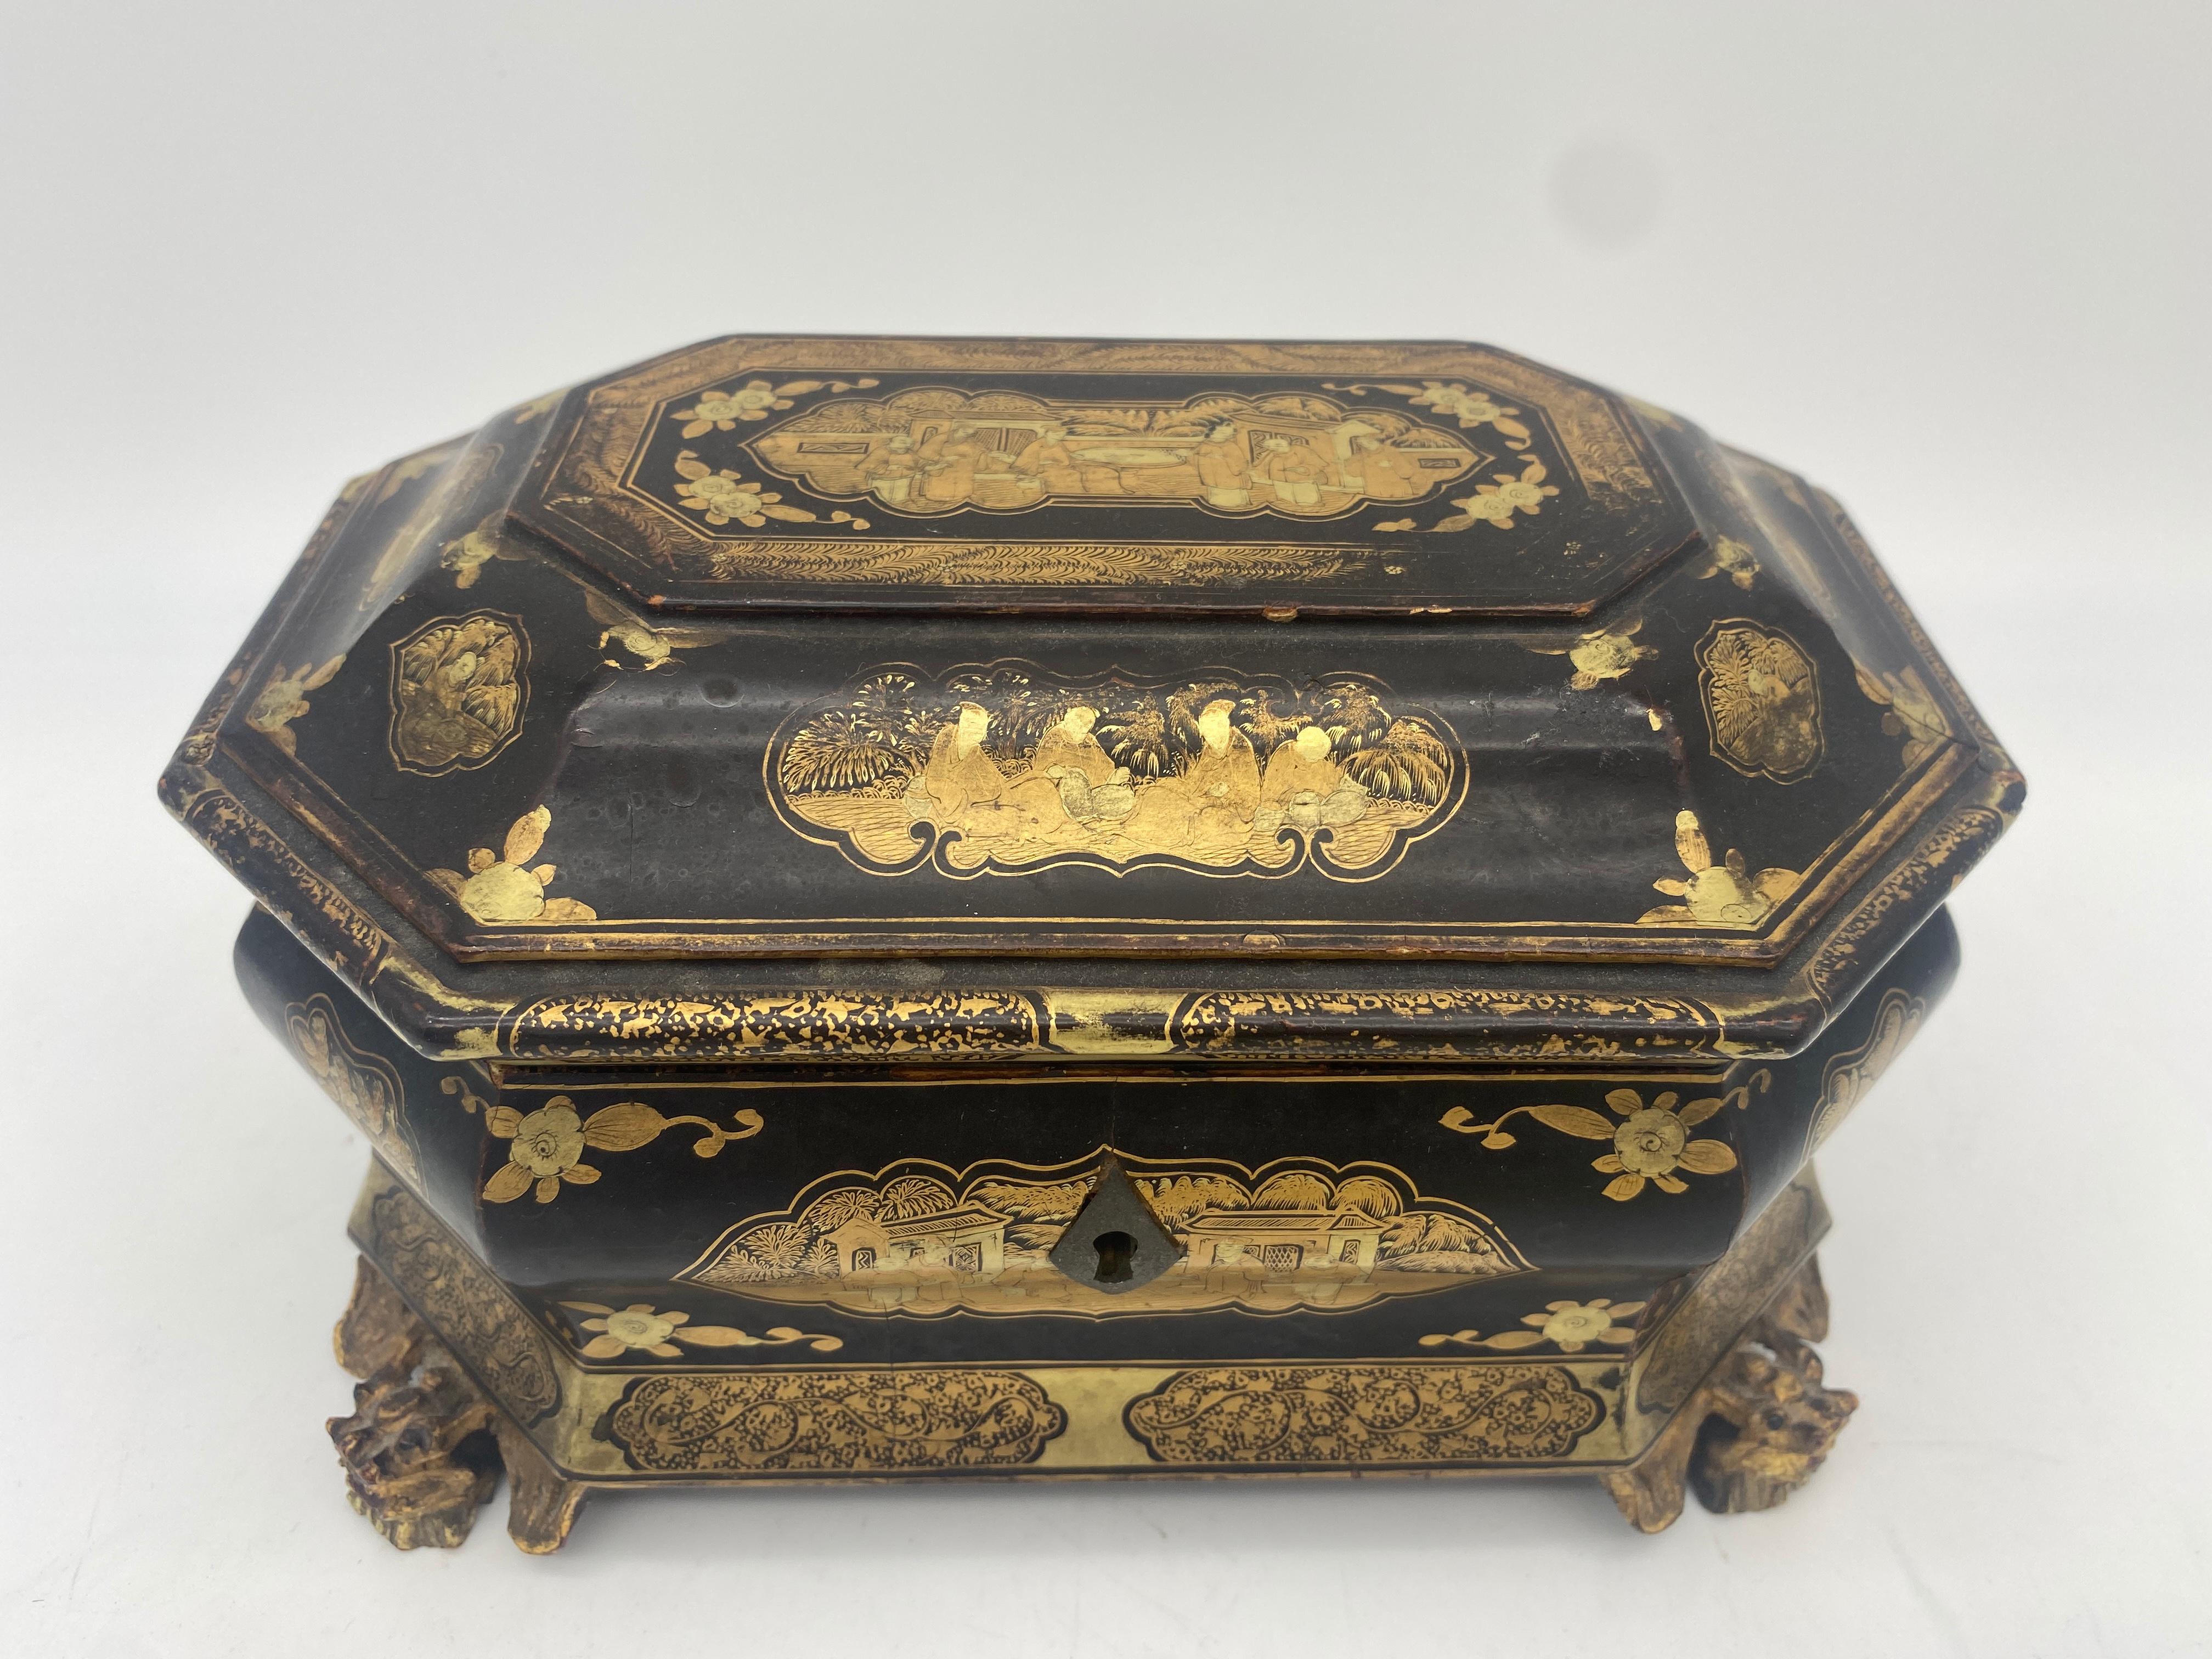 19. Jahrhundert goldener schwarzer Lack chinesische Teedose mit zwei Zinnern mit 4 Füßen, der vergoldete Körper verziert mit Tafeln von Landschaften, zwei Zinnern mit Abdeckungen, ein Zinn Bleiring gebrochen, sonst ist es sehr schönes kleines Stück.